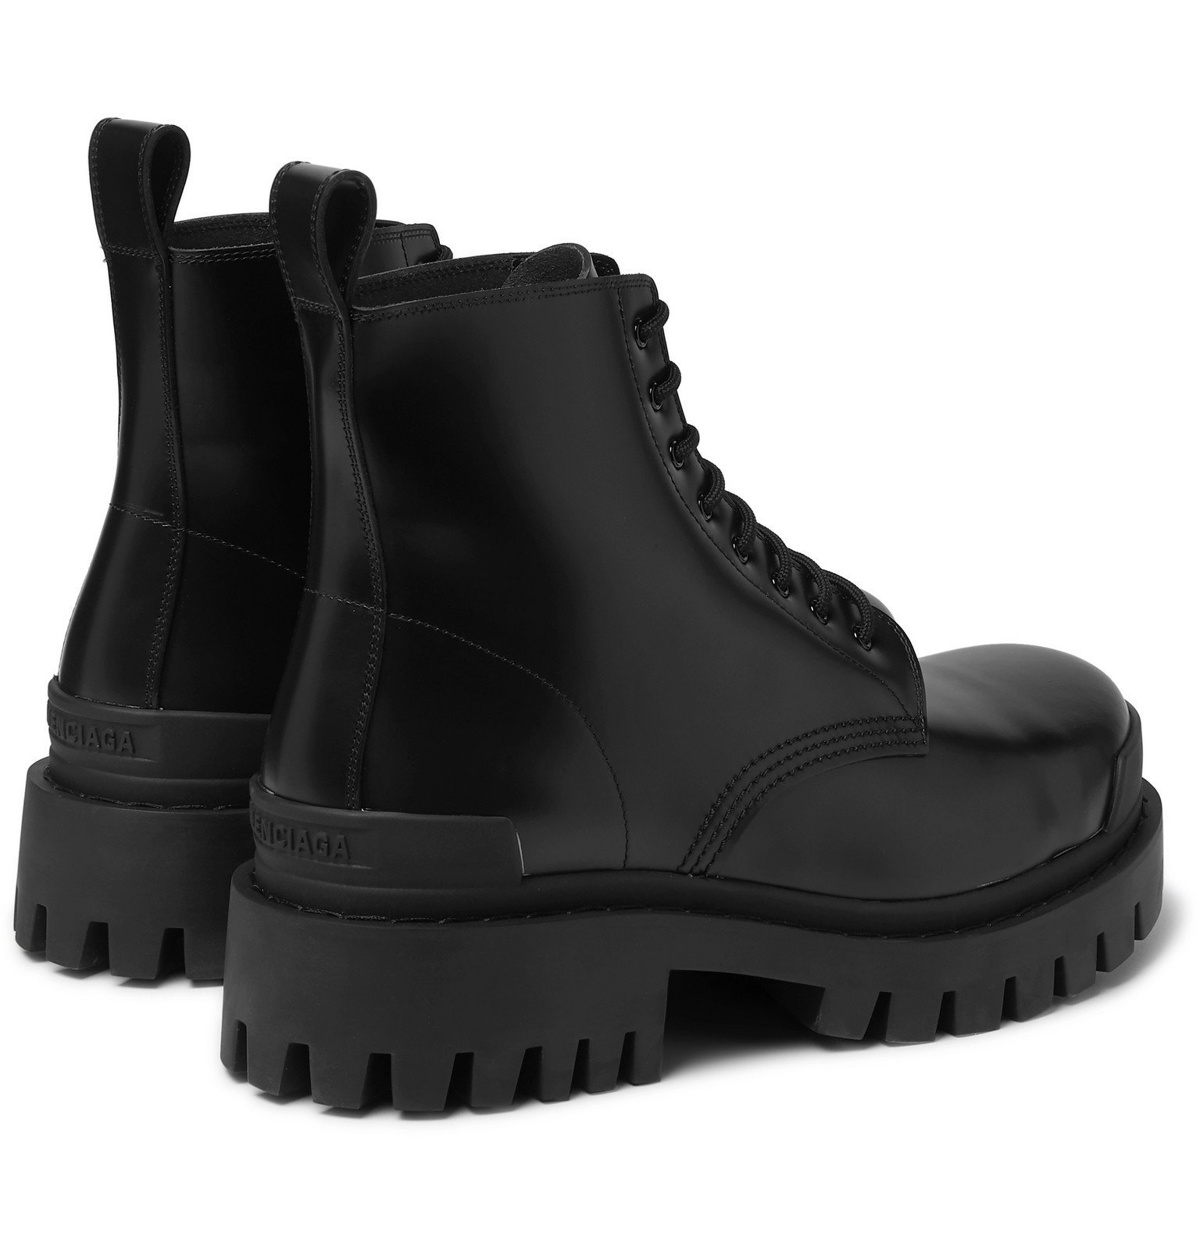 Balenciaga - Strike Leather Boots - Balenciaga